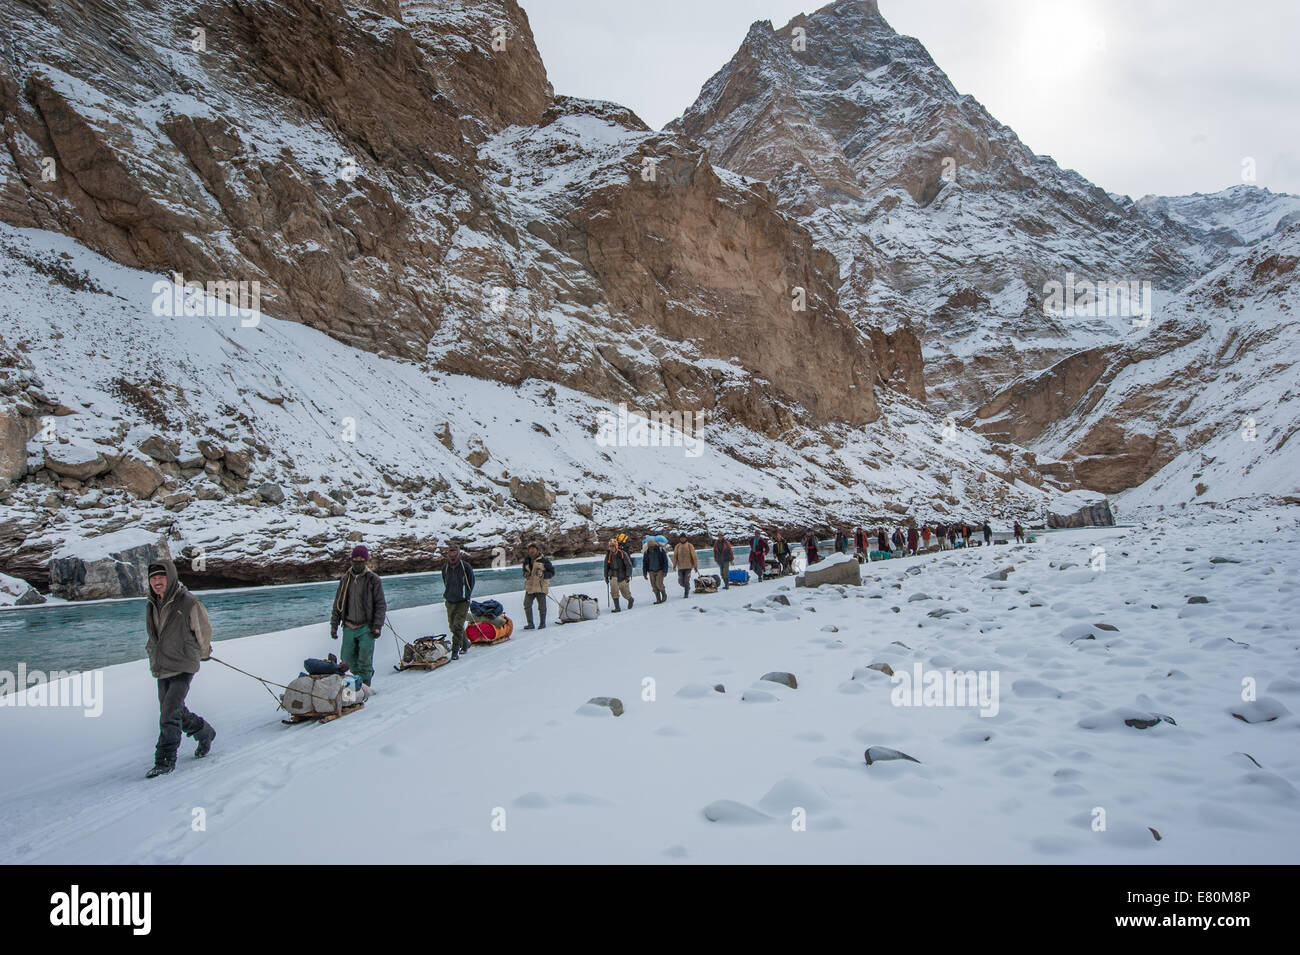 Porters are pulling trekkers luggage on Zanskar River during Chadar trek Stock Photo